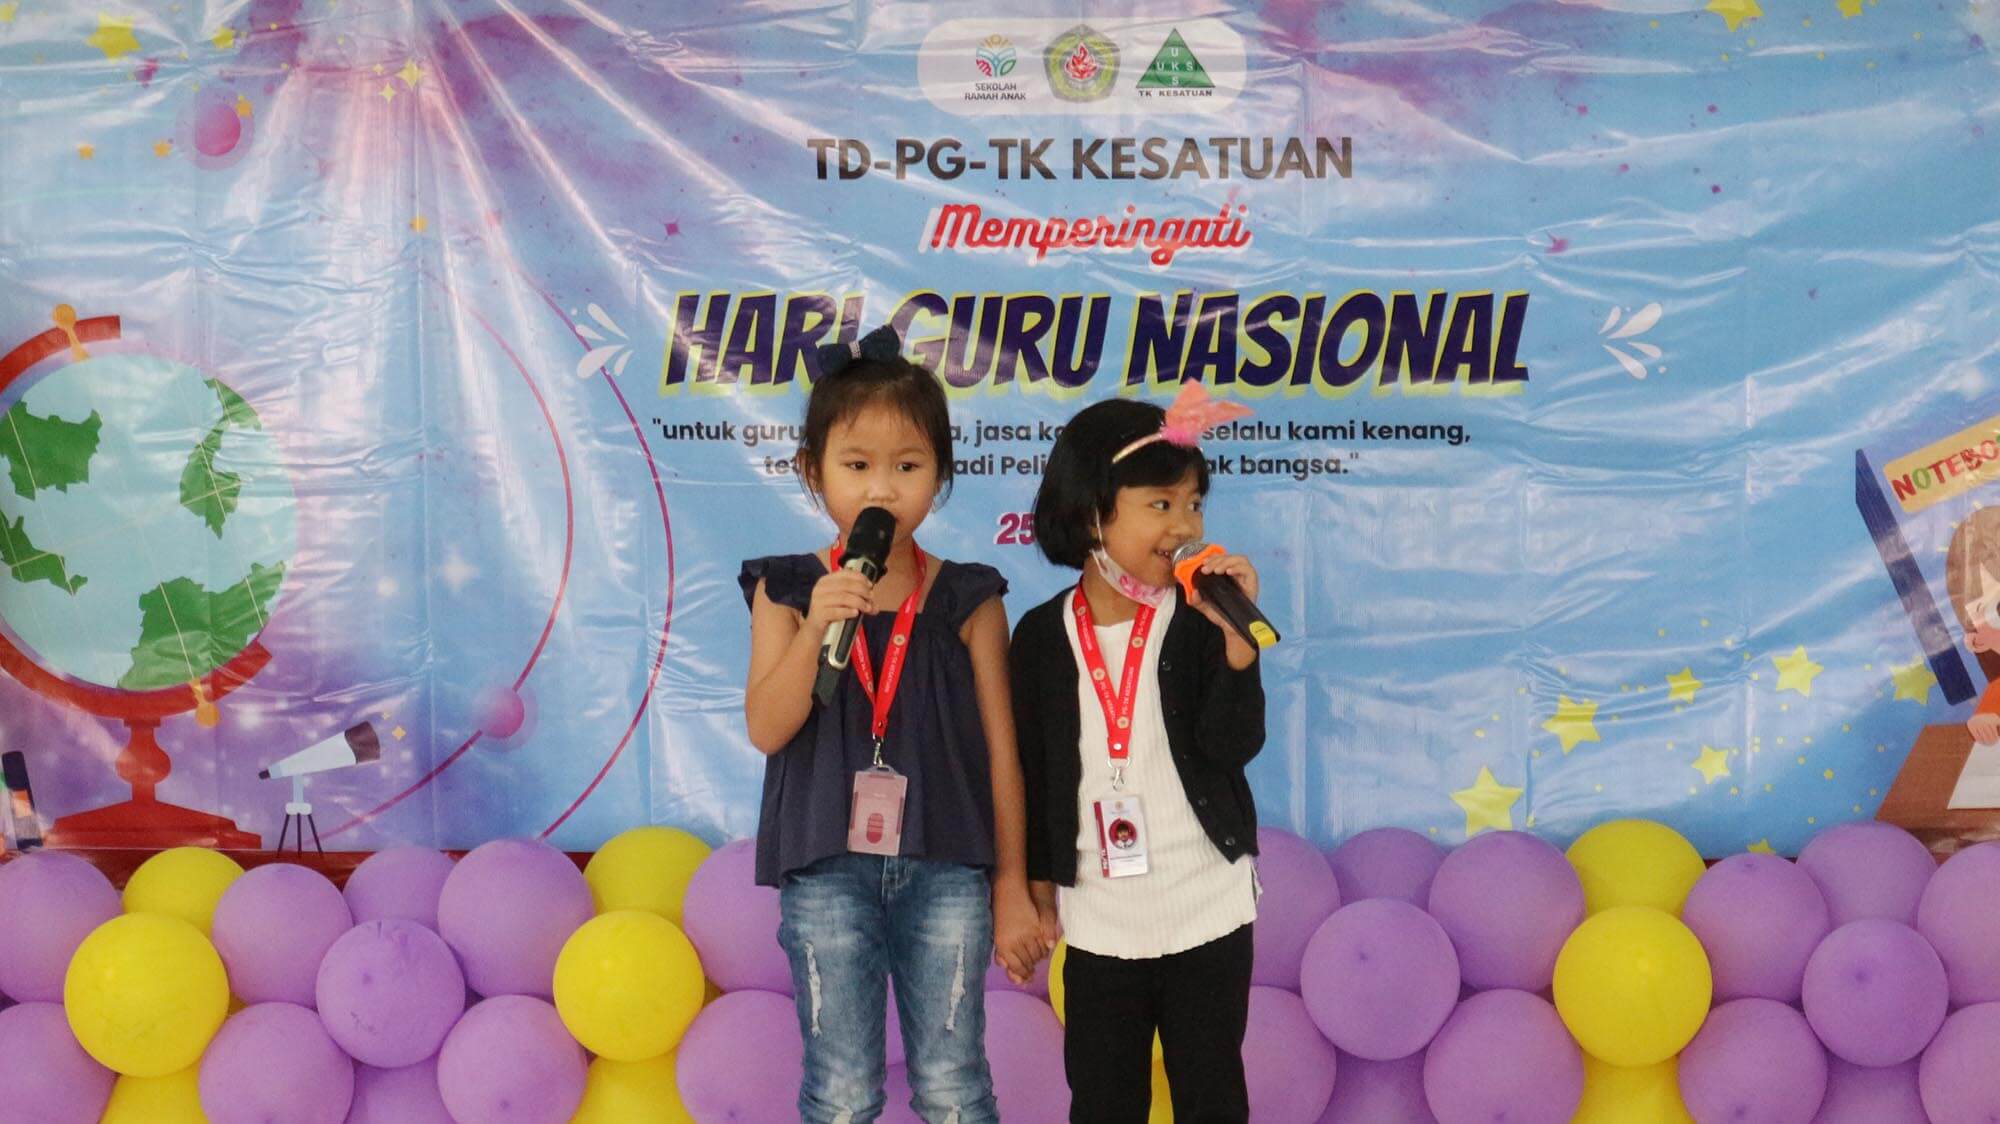 Kegiatan Memperingati Hari Guru Nasional TD - PG - Tk Kesatuan Bogor